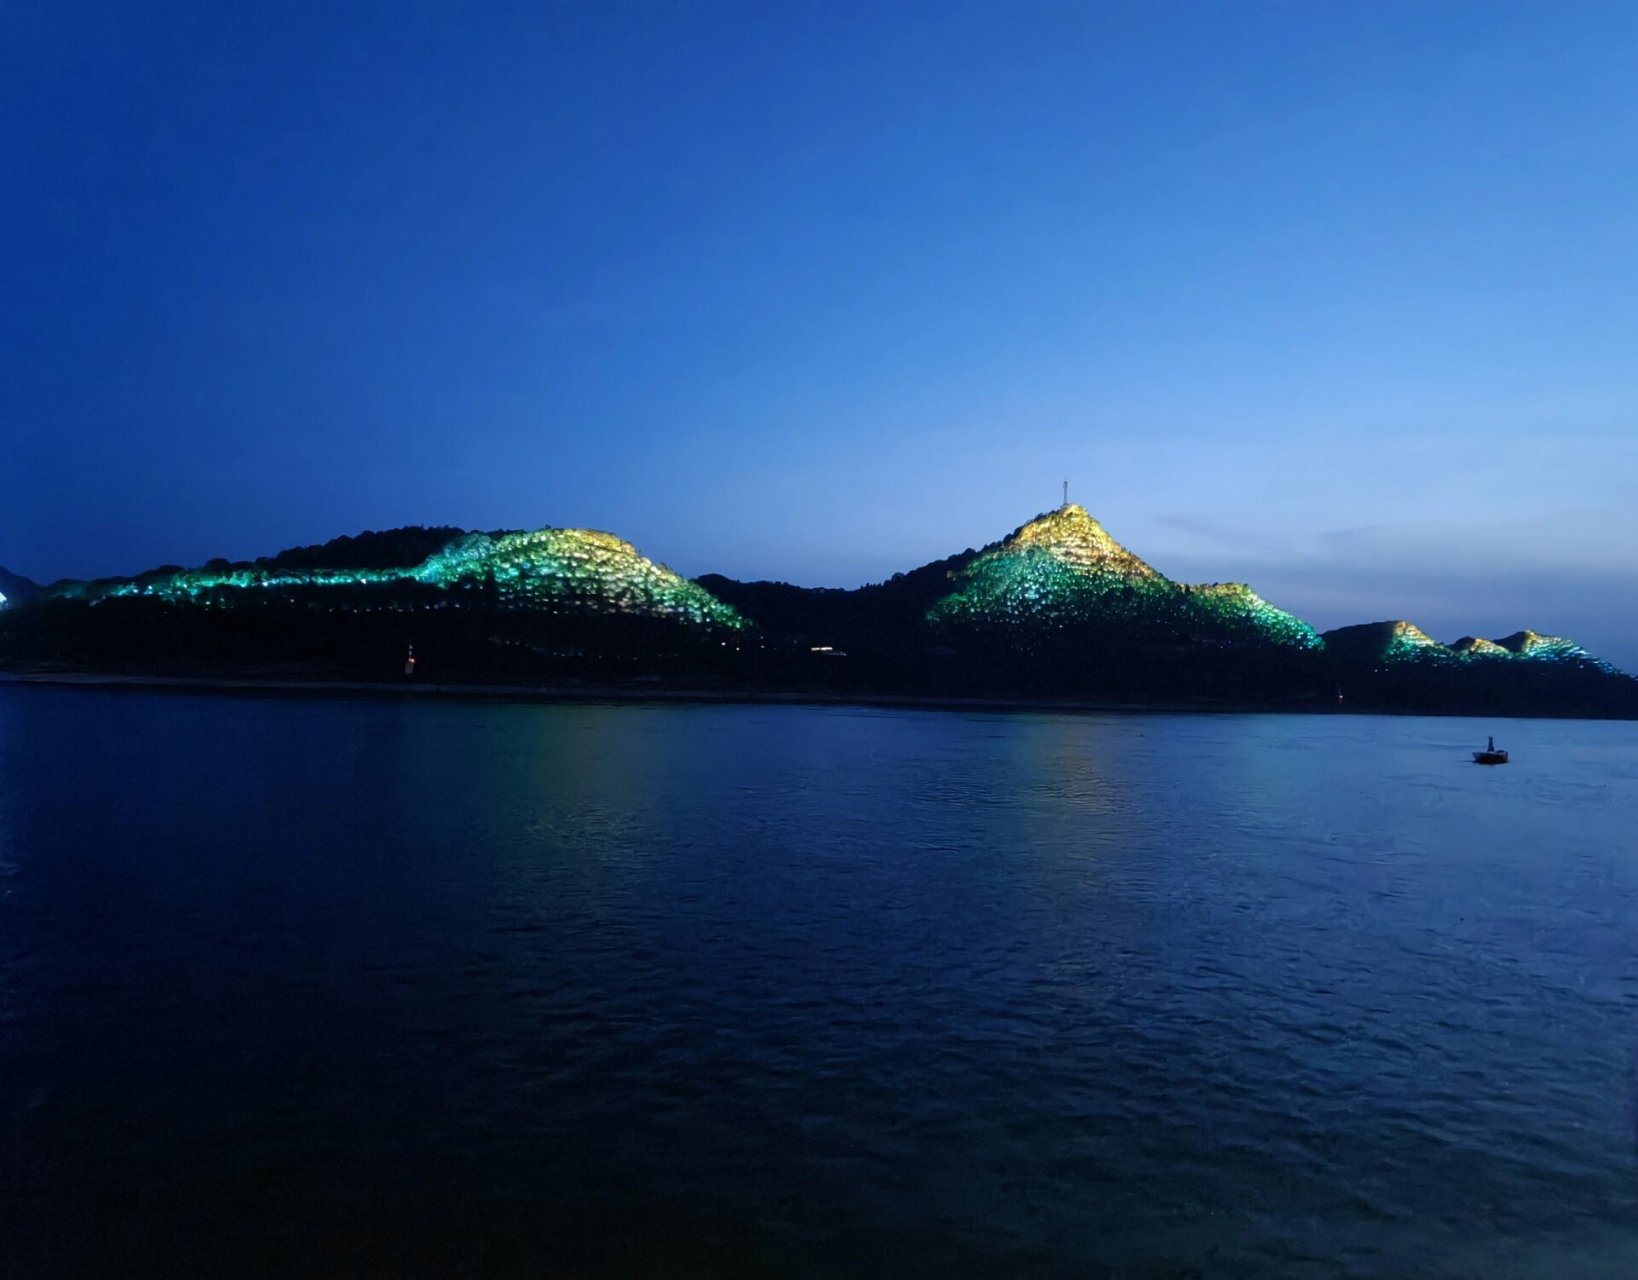 夜游长江三峡 长江三峡夜景真是美 随手一拍都可以当背景墙